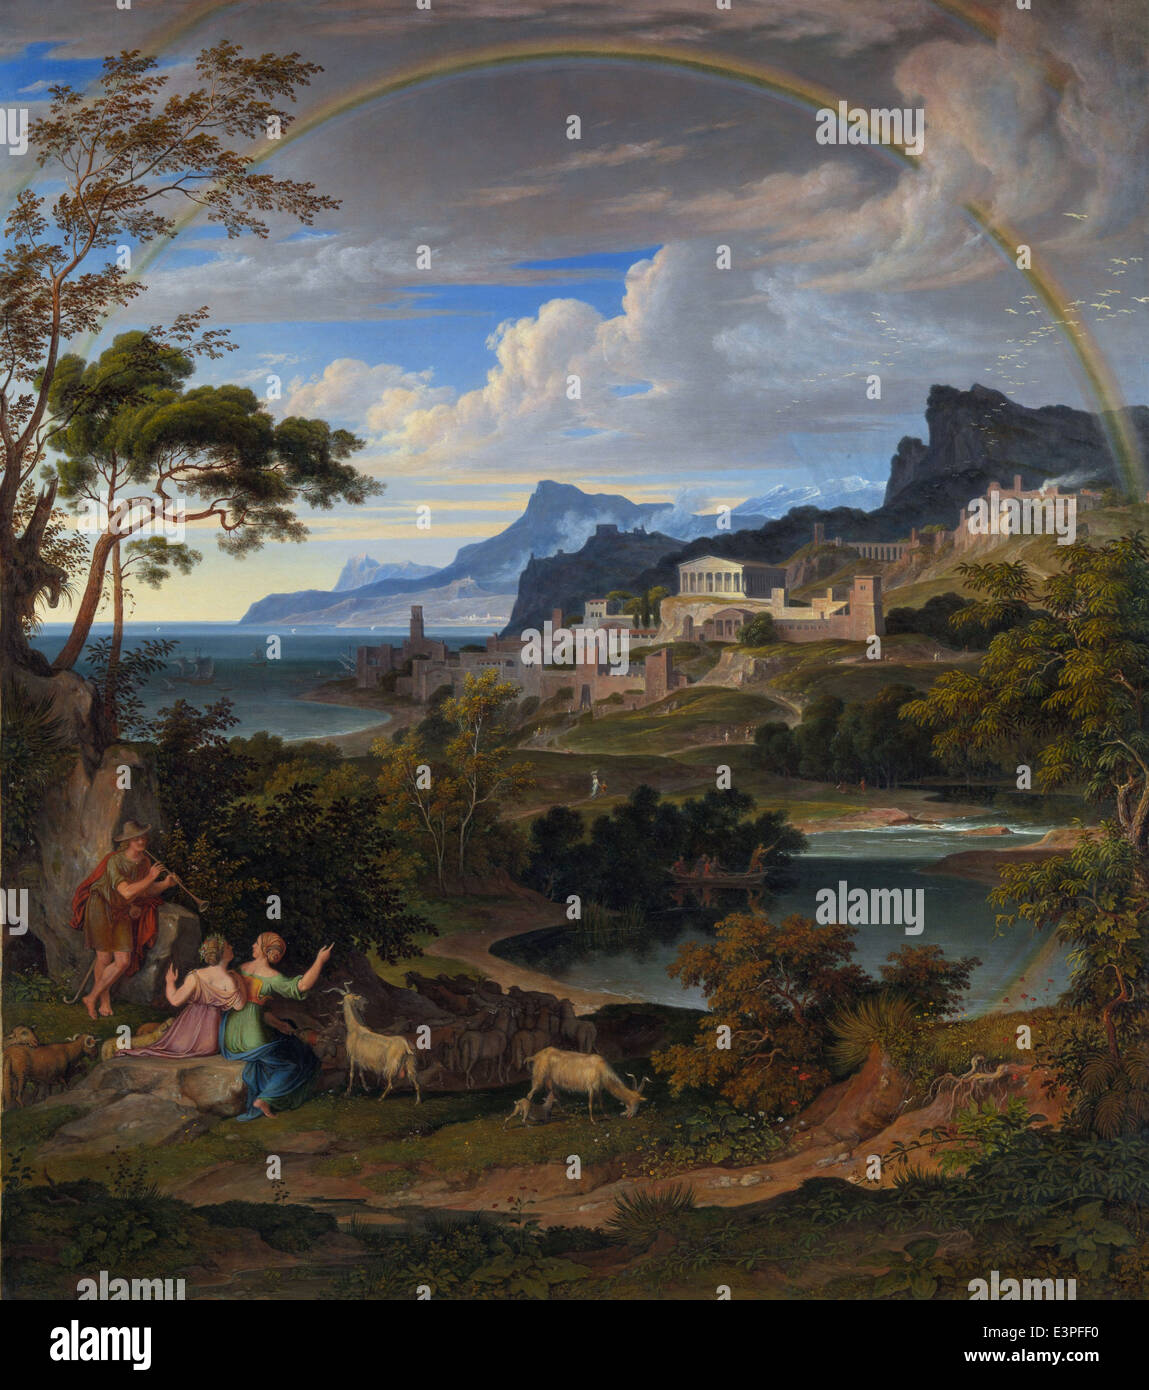 Joseph Anton Koch - heroico paisaje con arco iris - 1824 - MET Museum - New-York Foto de stock